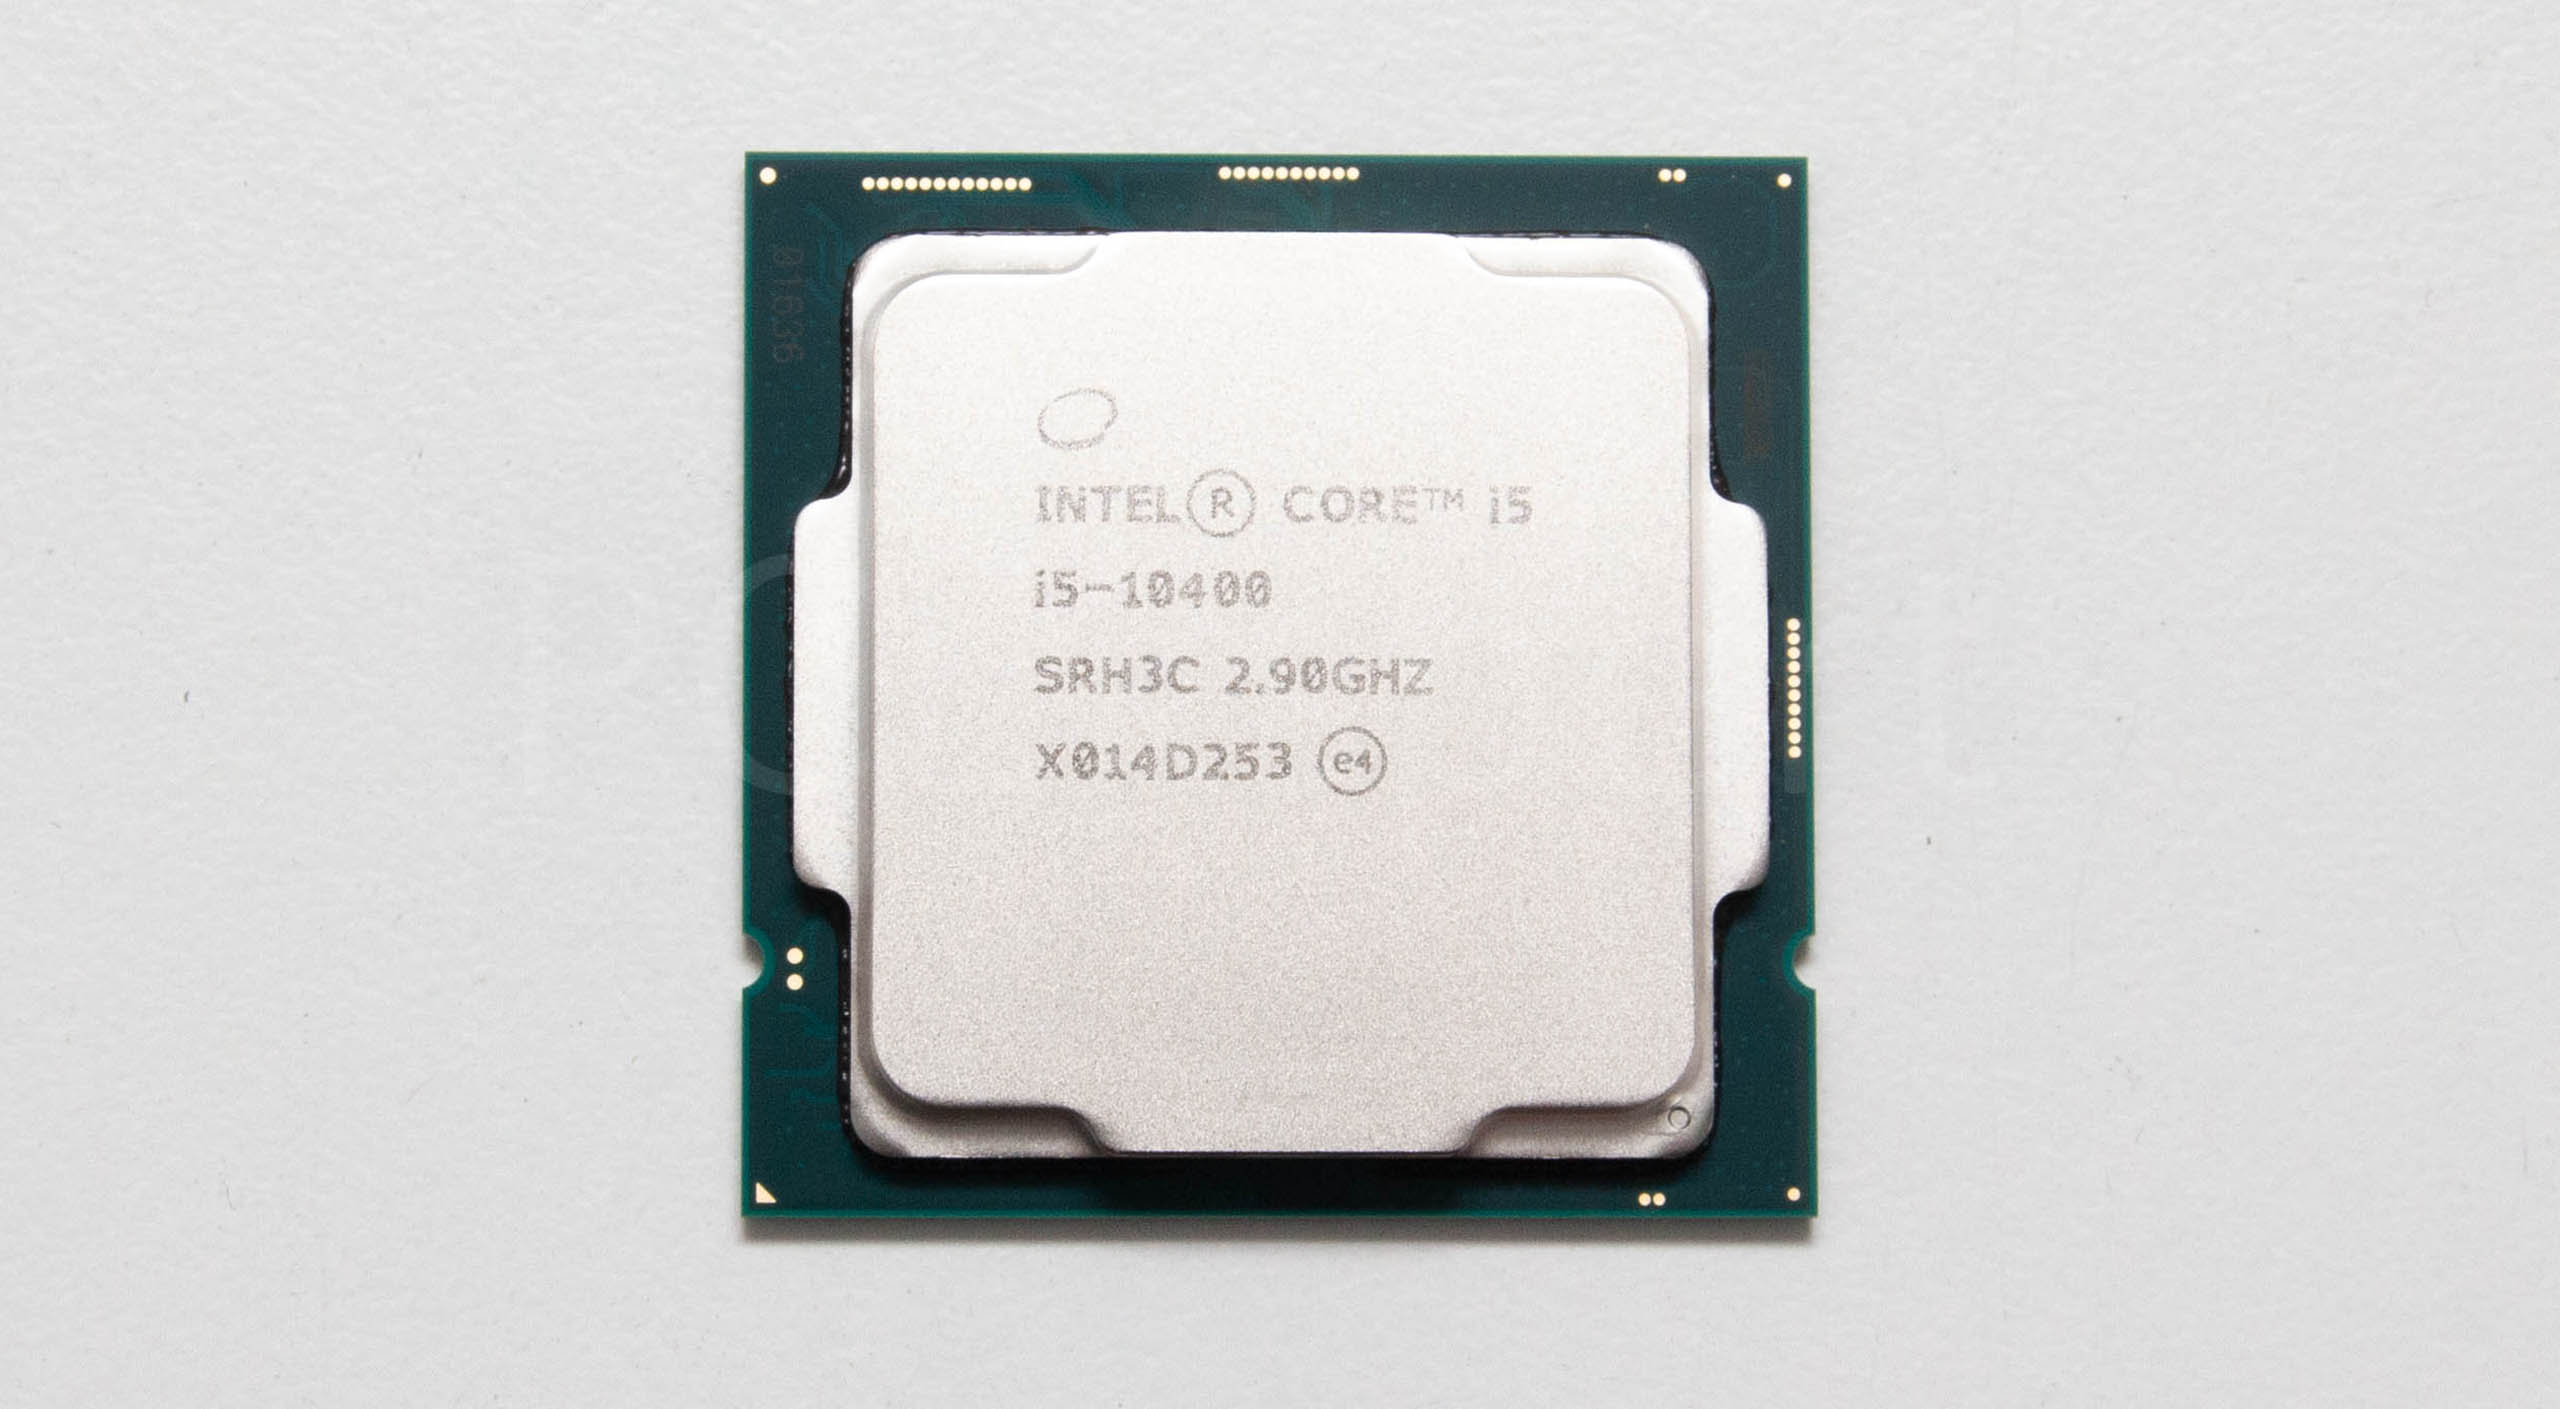 Интел 11400f